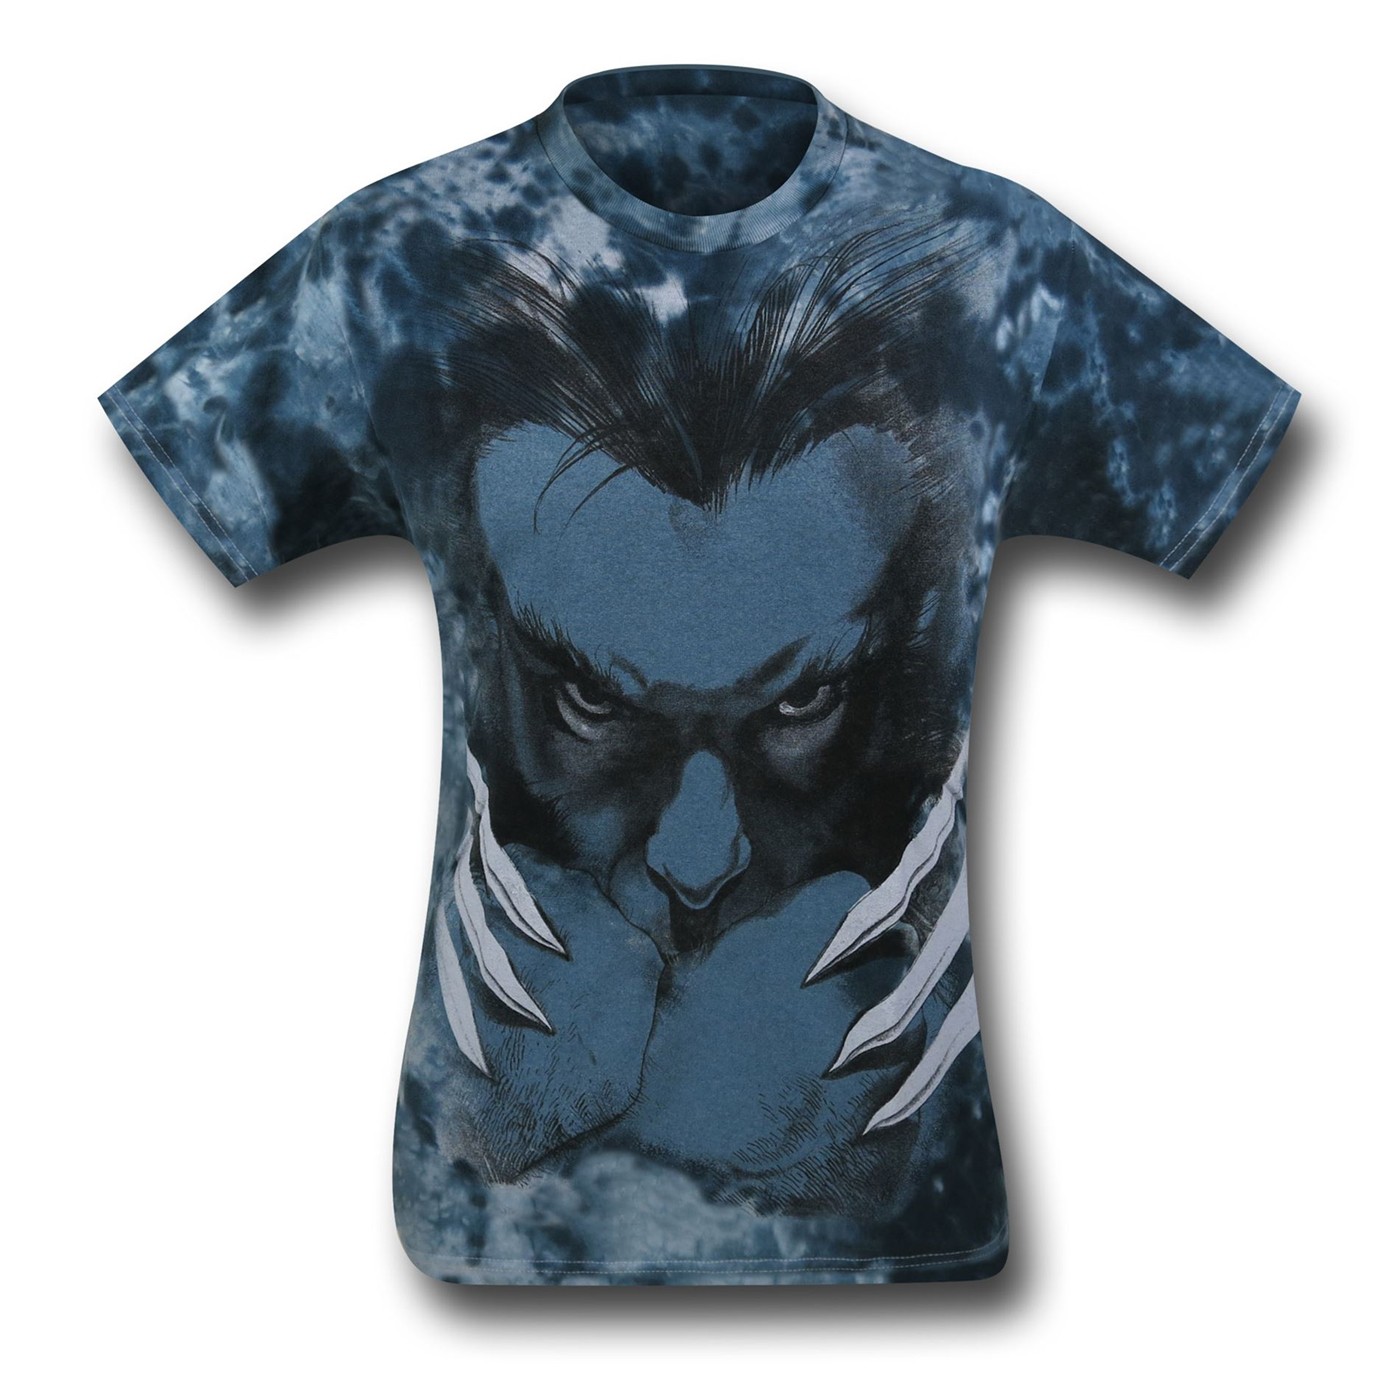 Wolverine Tie-Dye T-Shirt